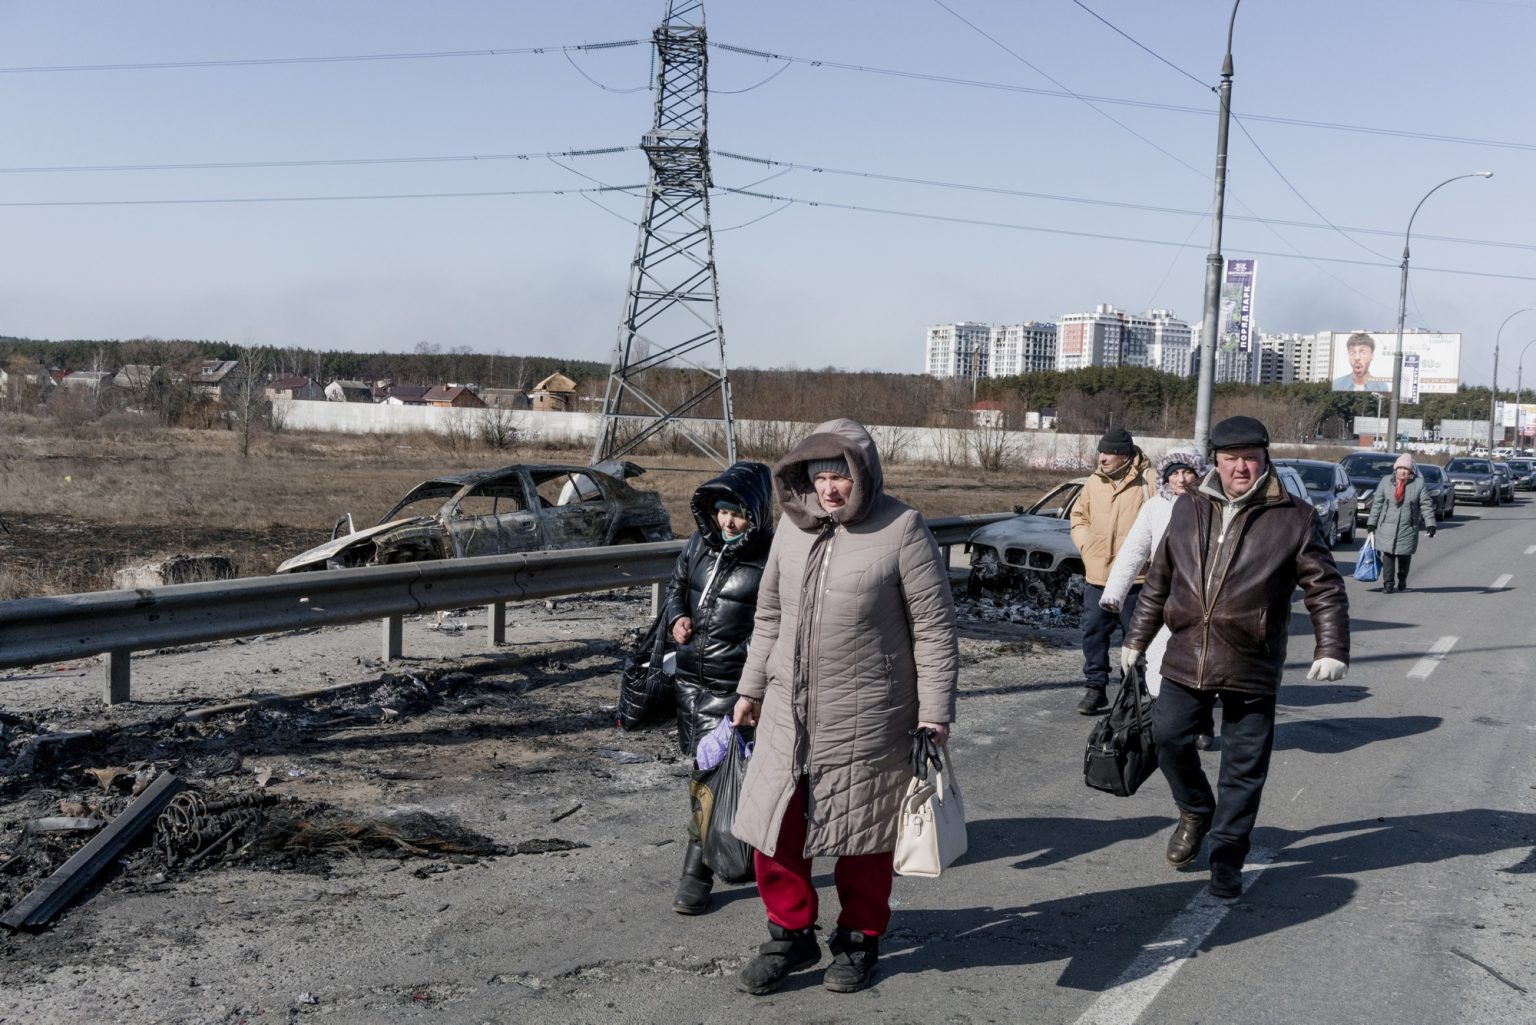 01557601 UKRAINE, Irpin. March 11, 2022 - People walk near a damaged bridge to evacuate from Irpin.                 As Russia invades Ukraine, thousands of Ukrainians are fleeing the country to find shelter in bordering countries. 
---------
Con l'invasione russa ai danni dell'Ucraina, migliaia di ucraini sono in fuga dalla nazione d'origine per cercare rifugio nelle nazioni confinanti.*** SPECIAL   FEE   APPLIES *** *** Local Caption *** 01557601